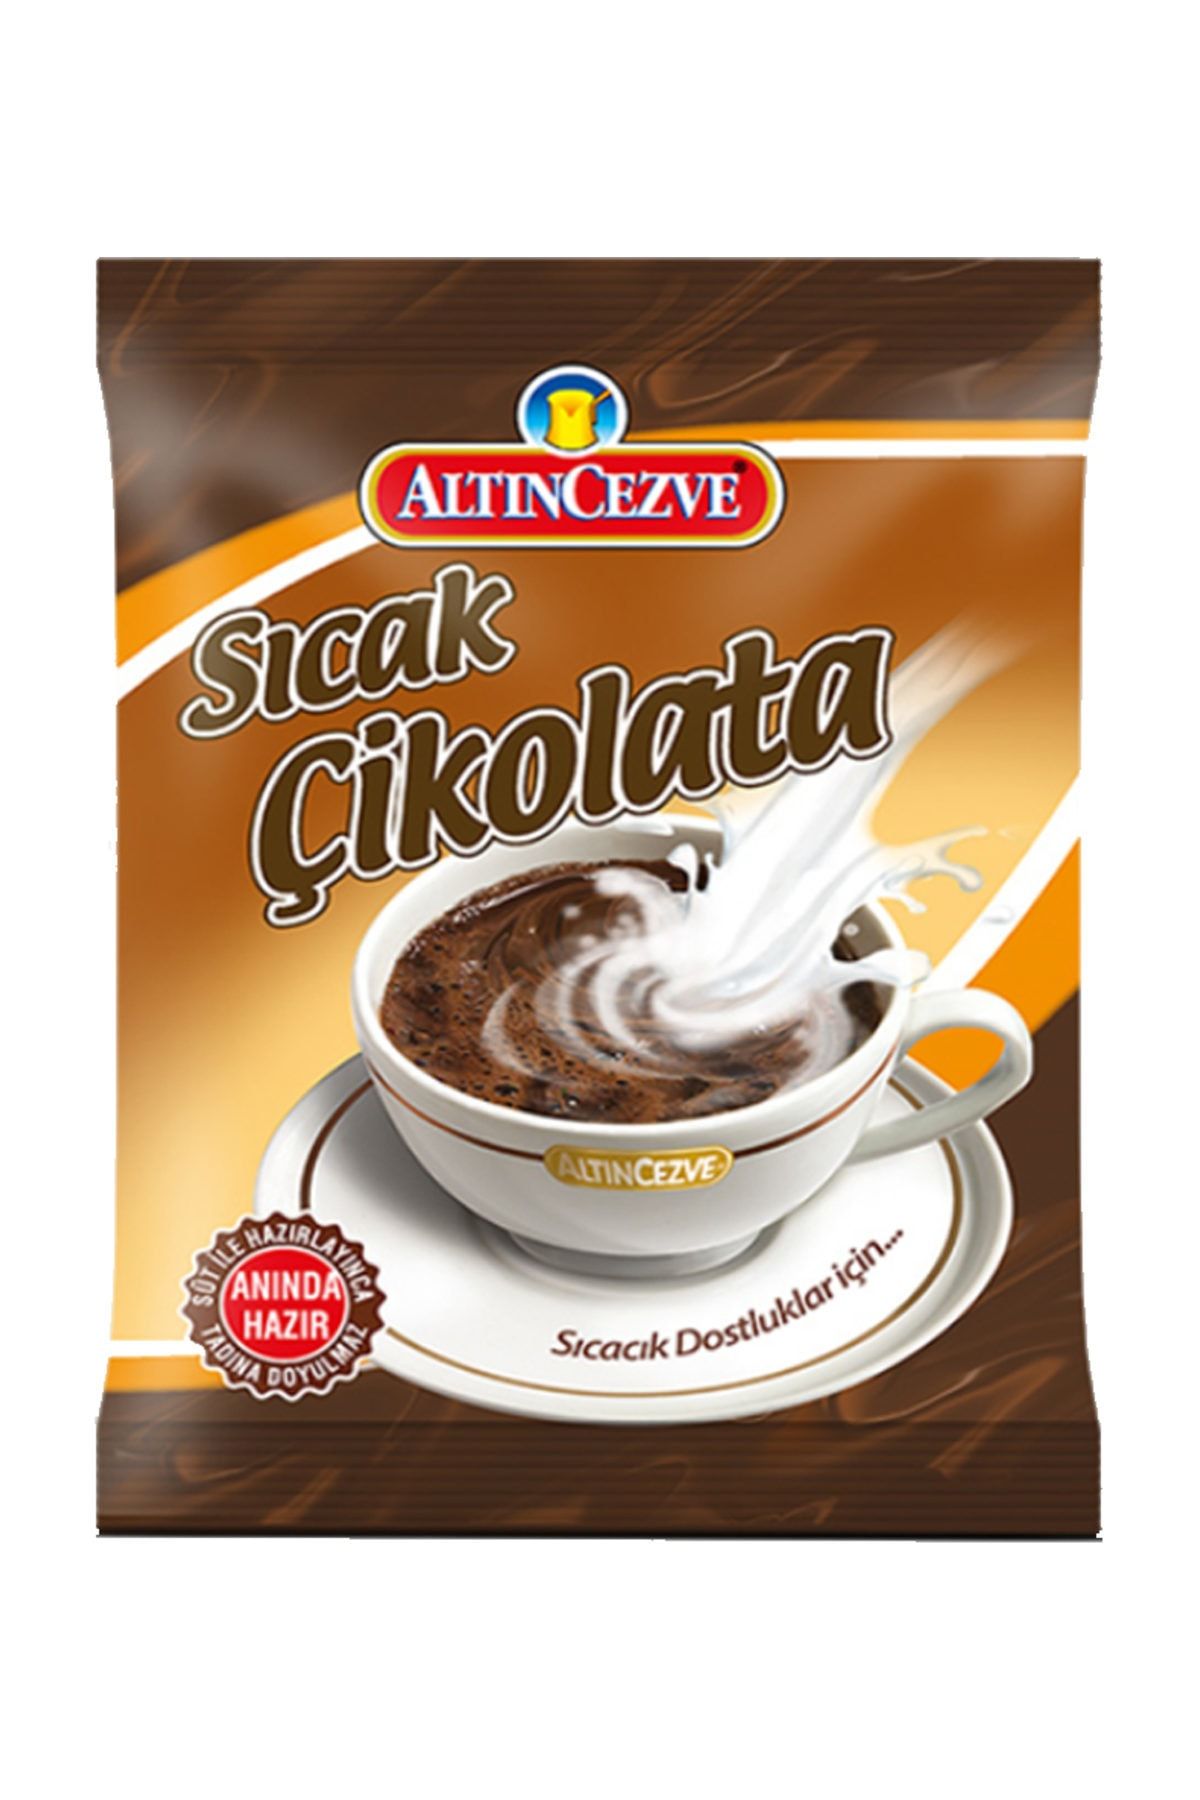 Monero Altıncezve Sıcak Çikolata 250 Gr.